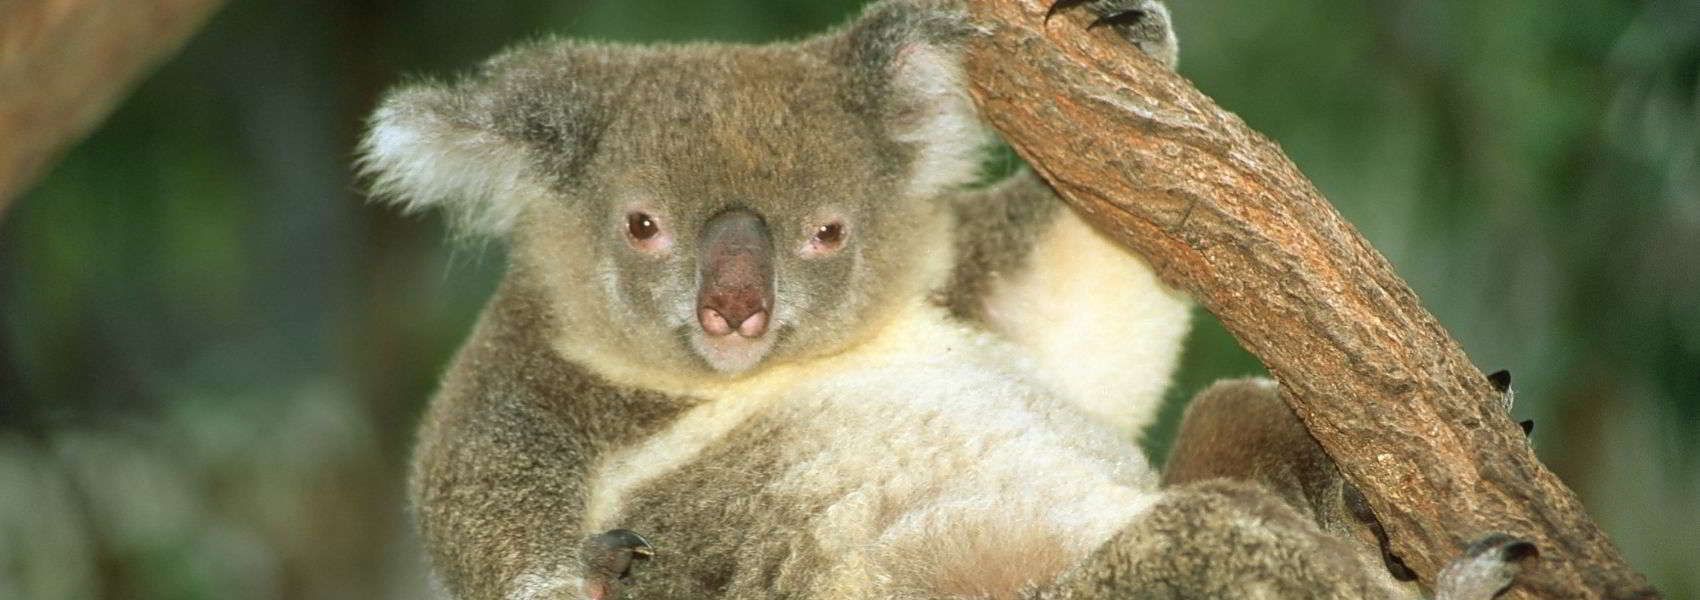 cosa vedere in Oceania foto di un koala